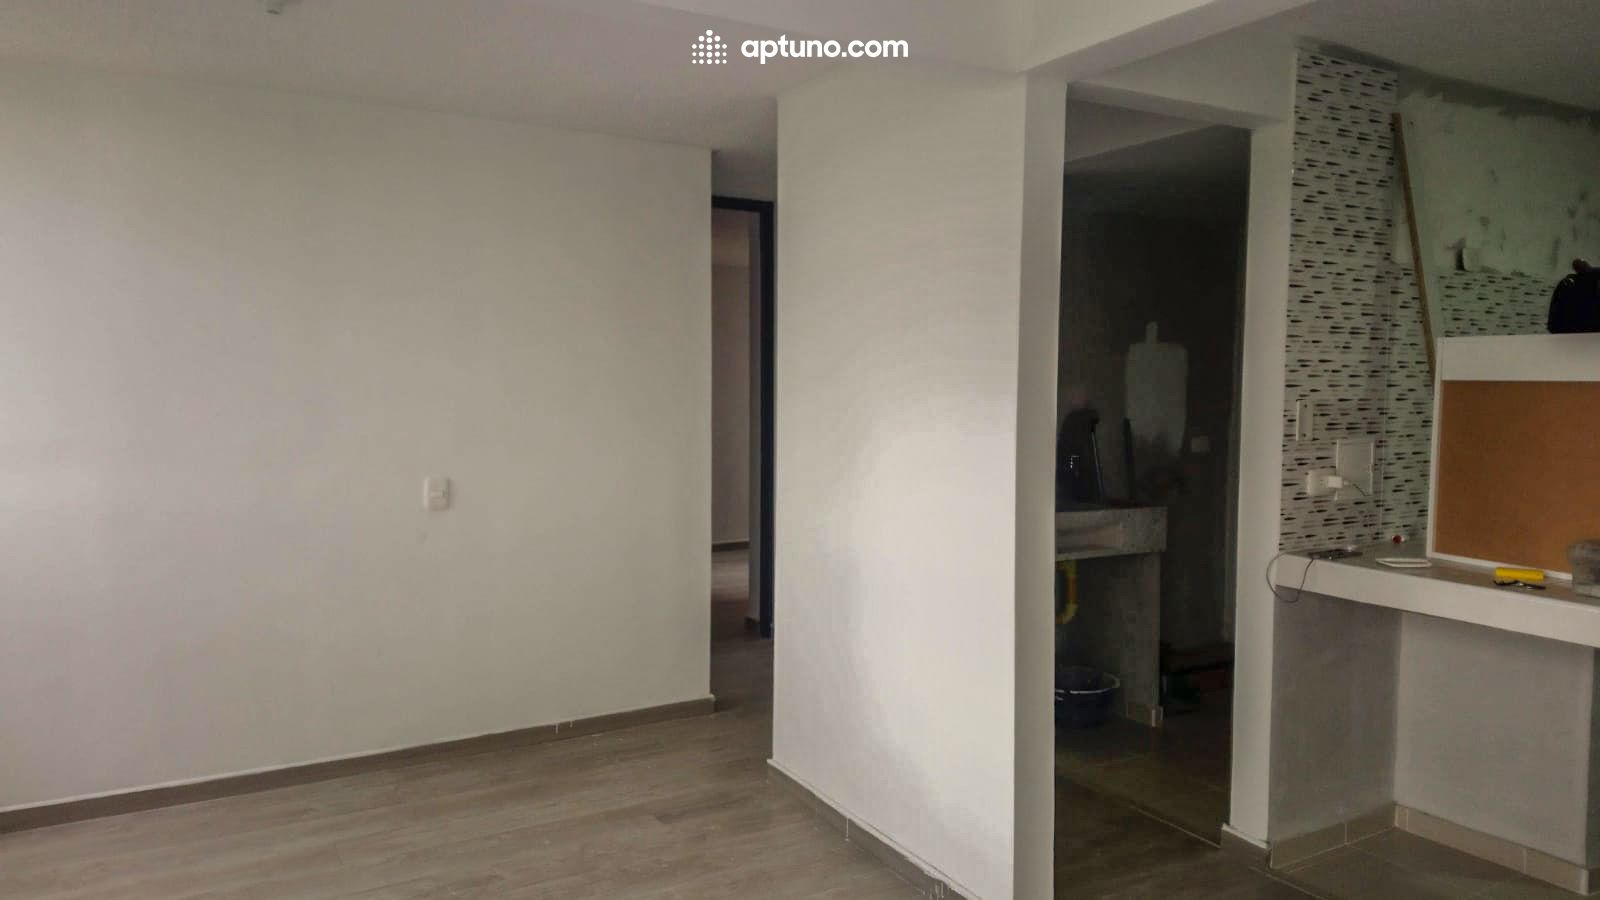 Apartamento en arriendo Zipaquirá 62 m² - $ 700.000,00